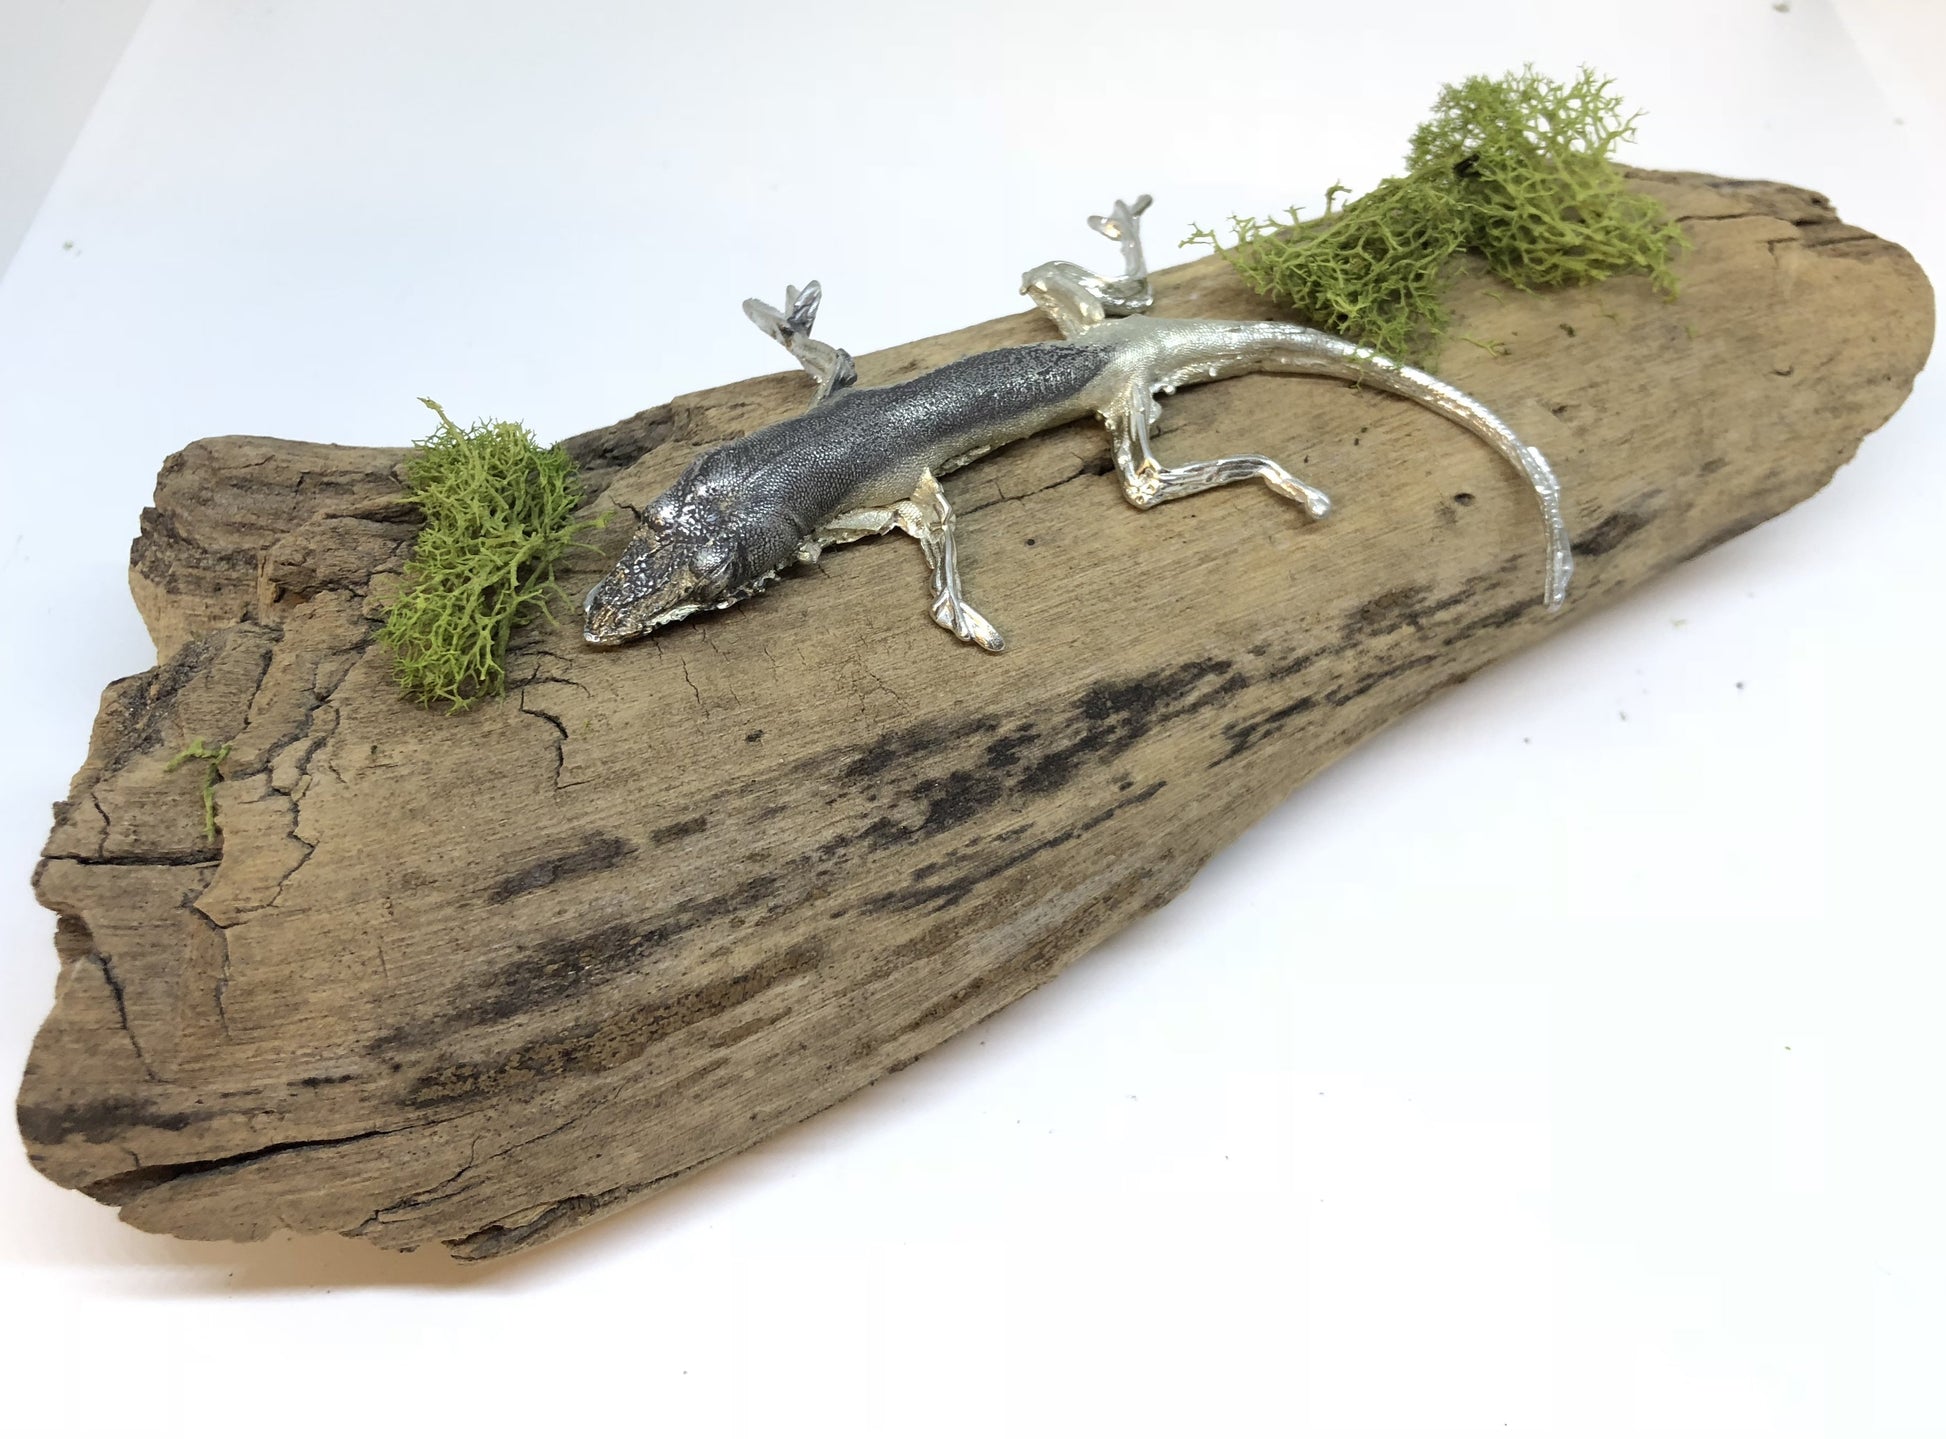 Metal Lizard Art Sculpture by Candice Alexander, Louisiana Artist